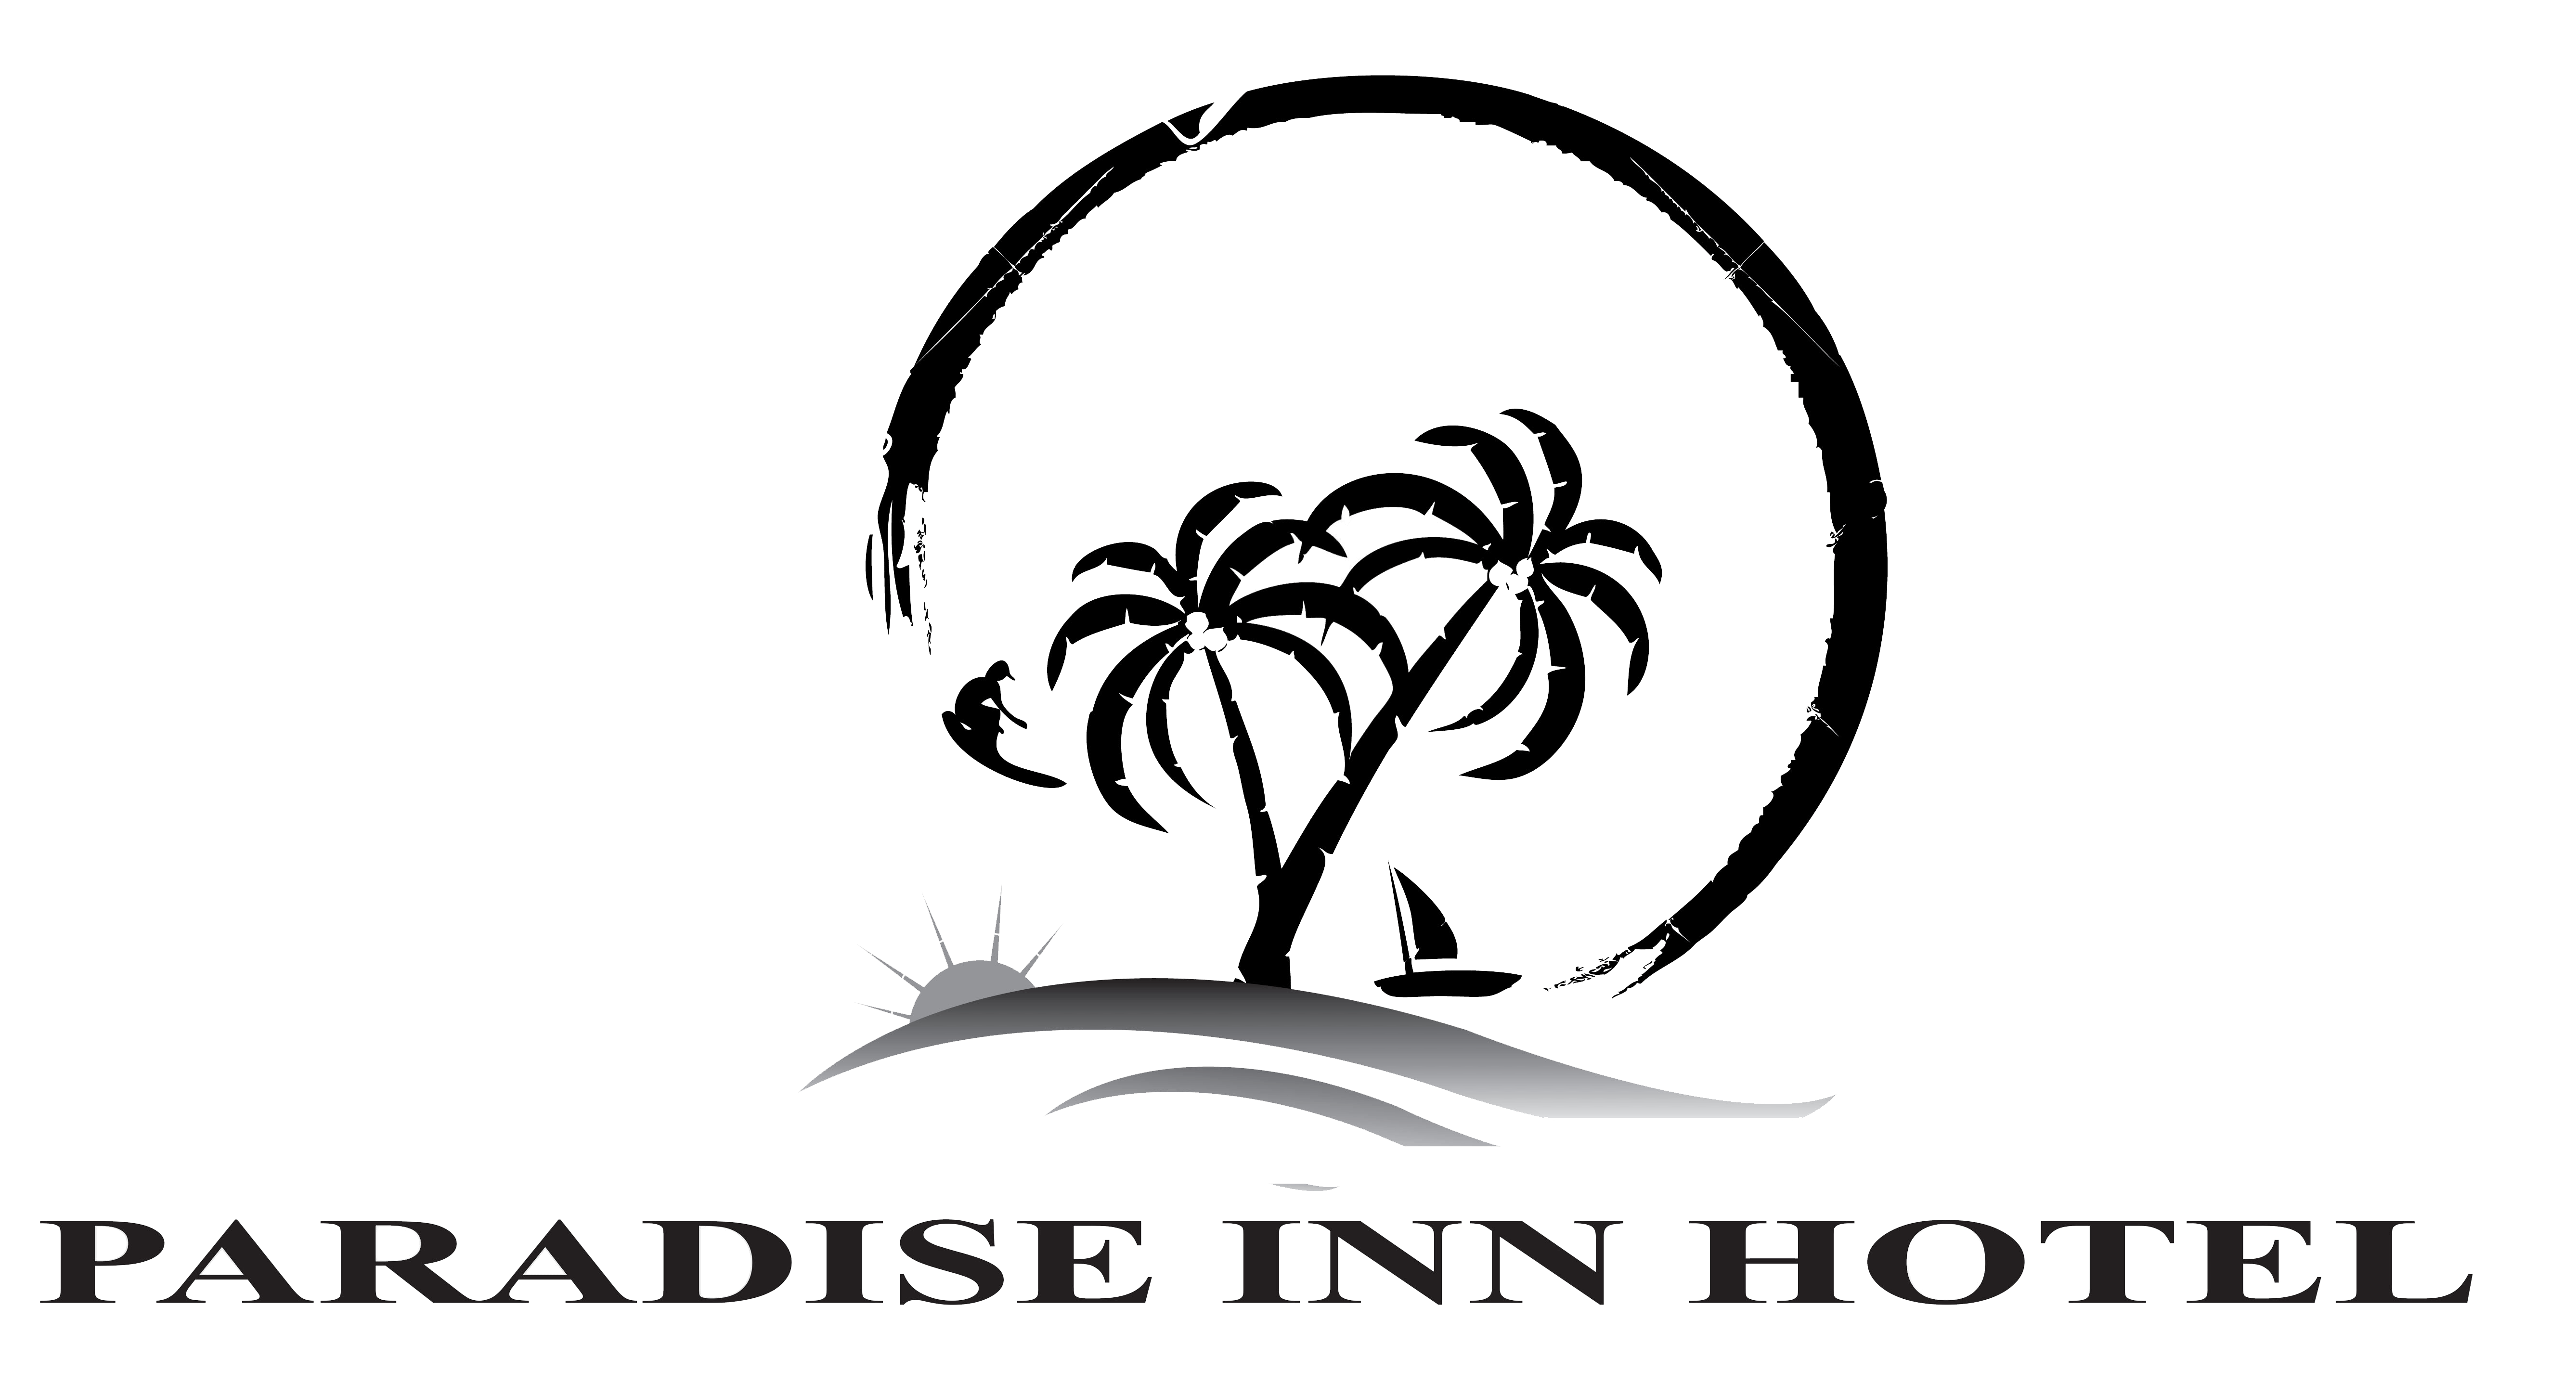 Paradise Hotel Logo - Executive Suites. Paradise Inn Hotel